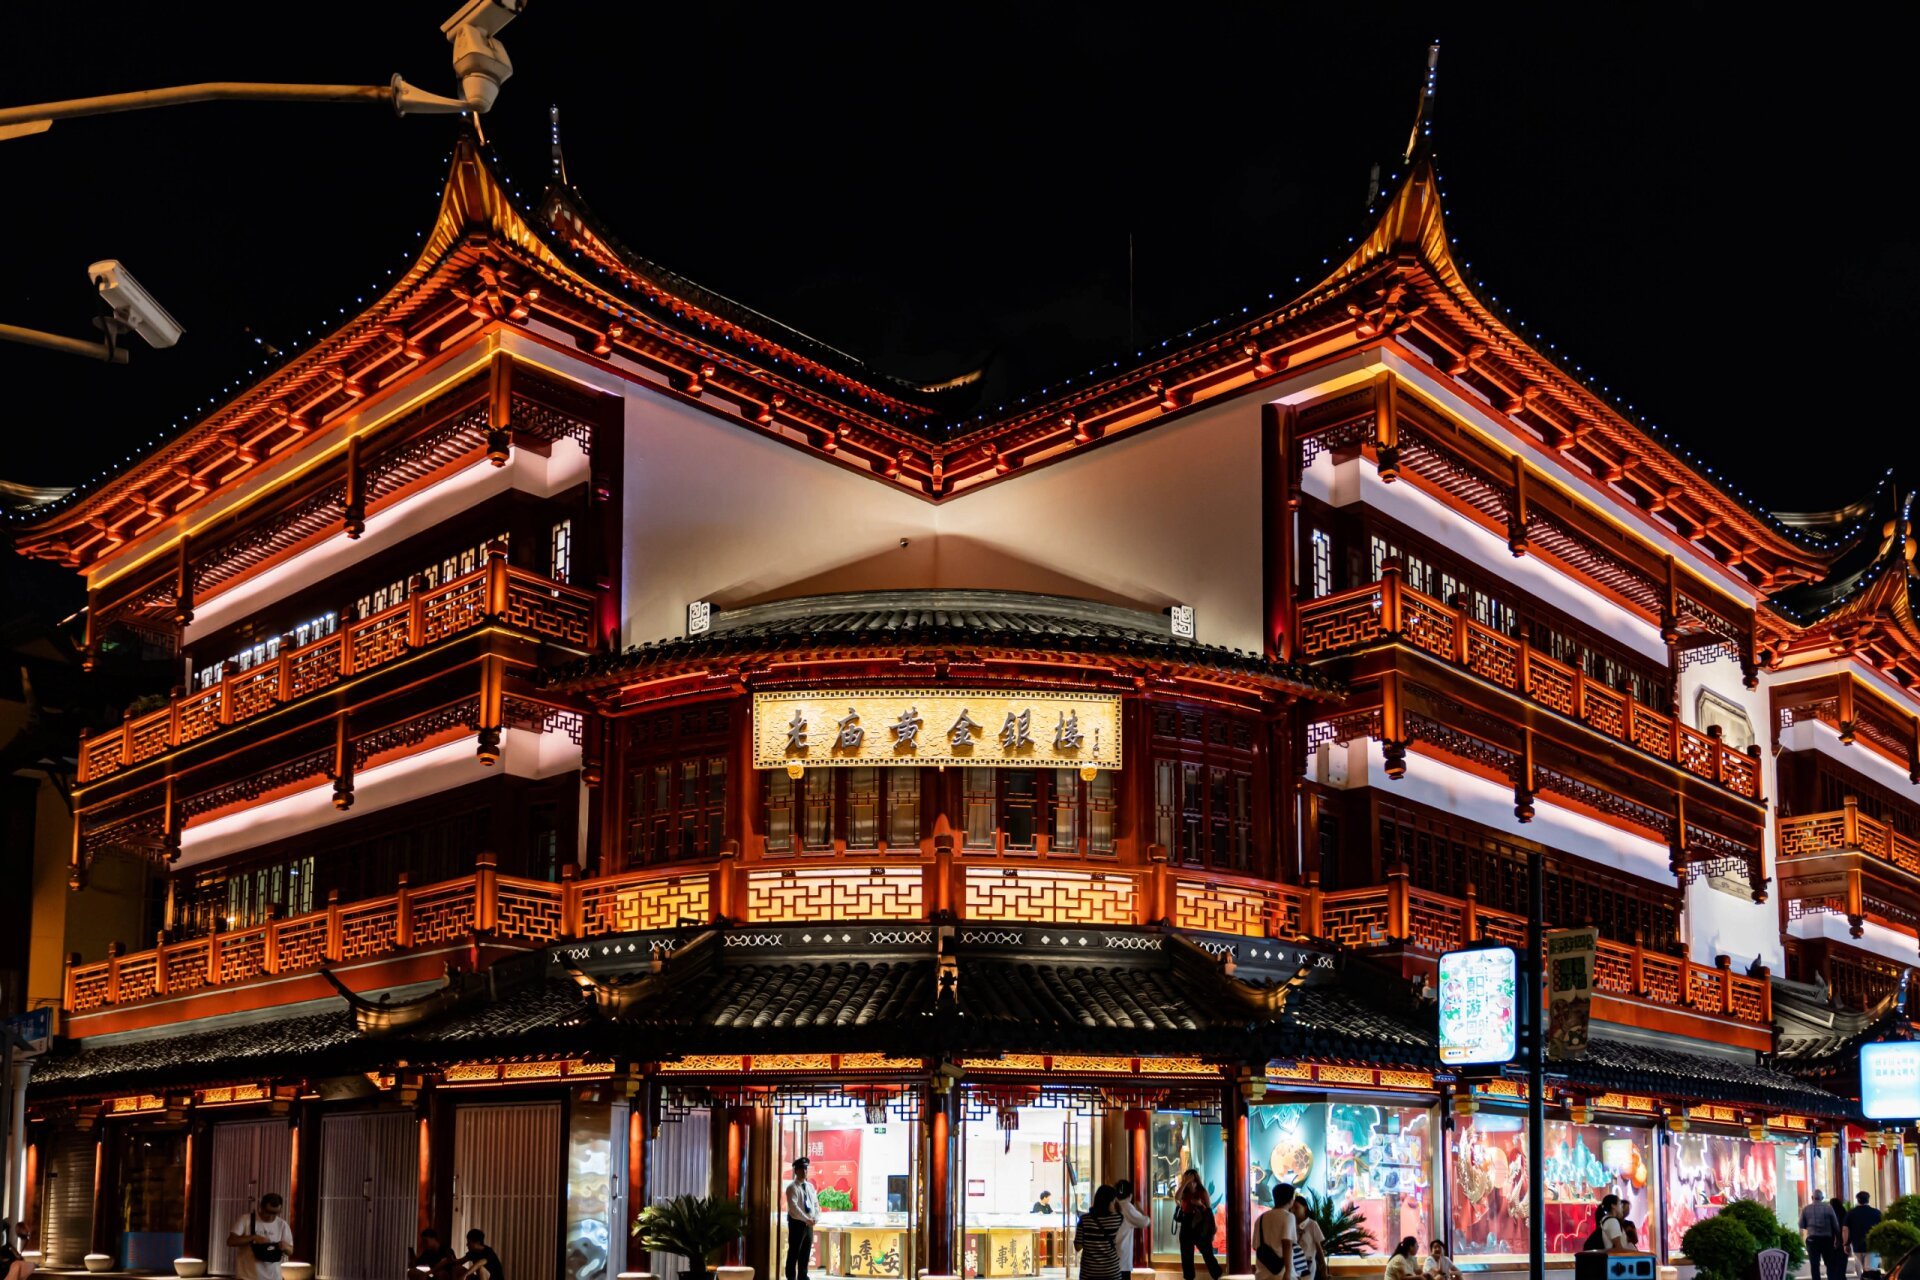 上海城隍庙小吃街 小吃街建议晚上来,拍照打卡非常好看～ 但是里面的